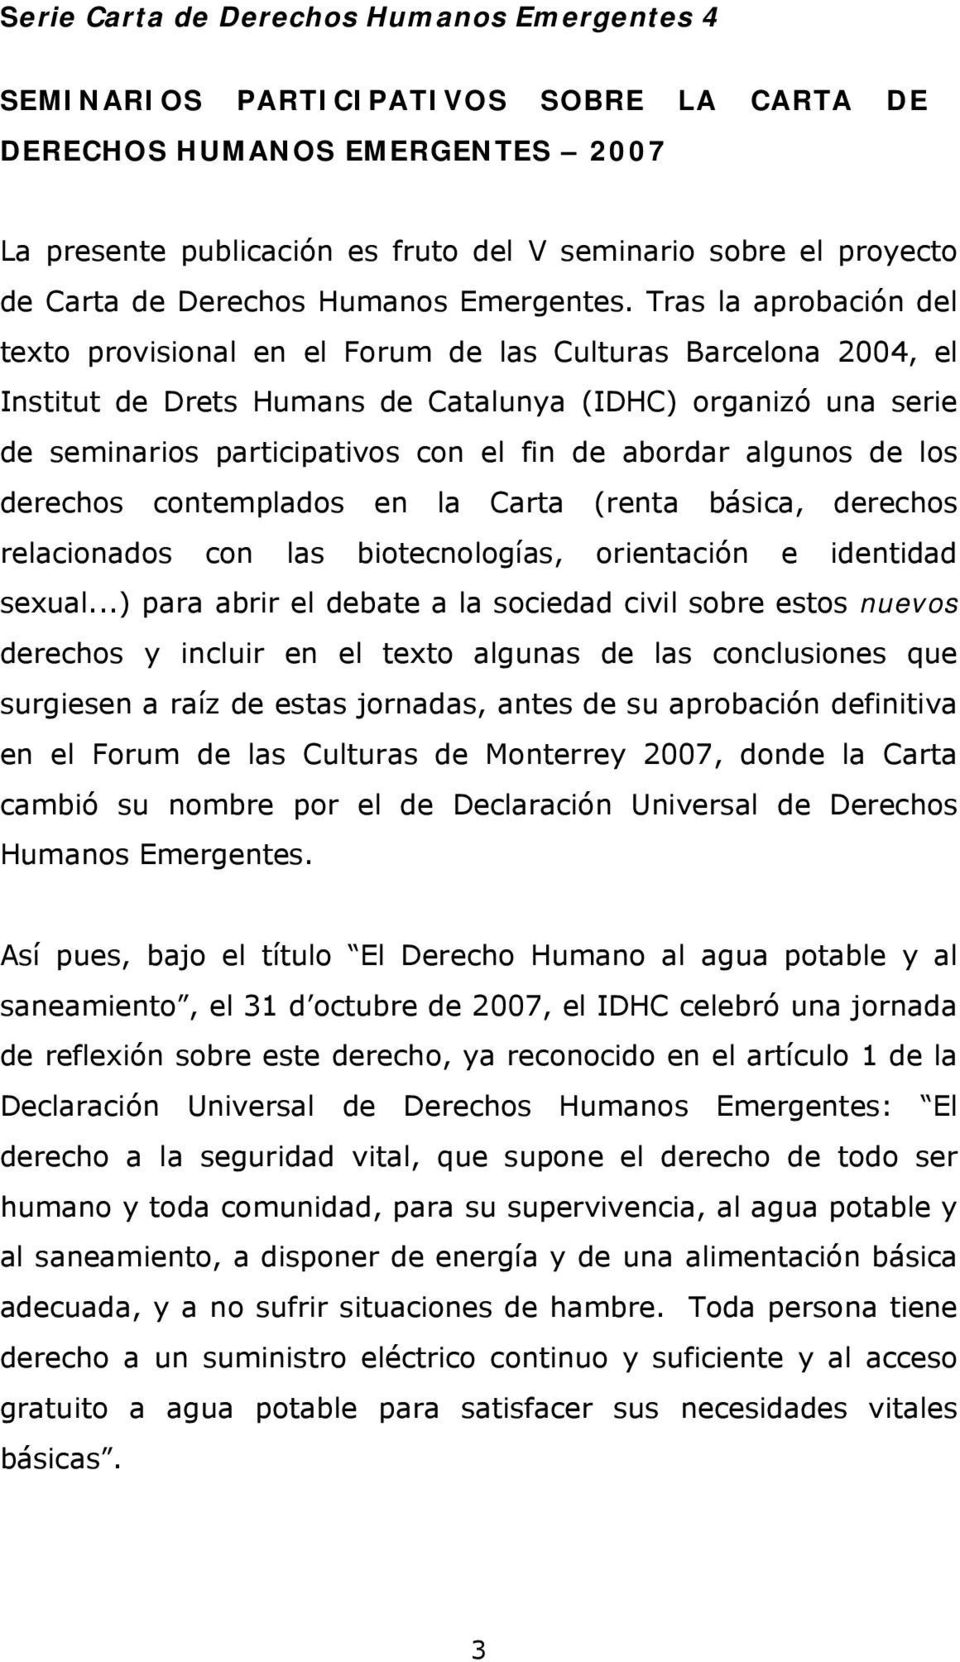 Tras la aprobación del texto provisional en el Forum de las Culturas Barcelona 2004, el Institut de Drets Humans de Catalunya (IDHC) organizó una serie de seminarios participativos con el fin de